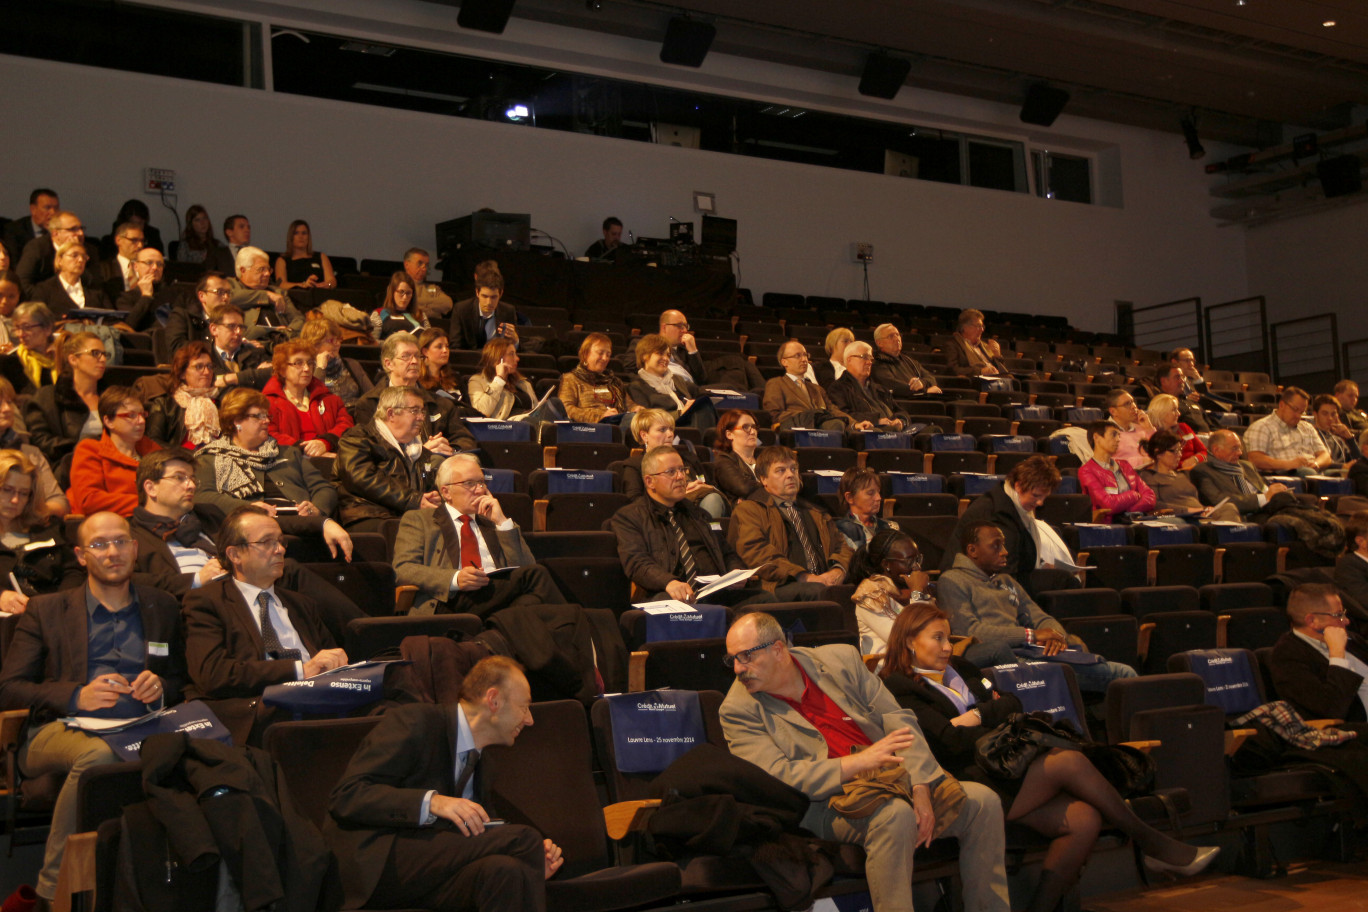 120 personnes avaient fait le déplacement à Lens pour assister à la conférence sur le thème de l’optimisation de la gestion des ressources humaines dans le monde associatif.